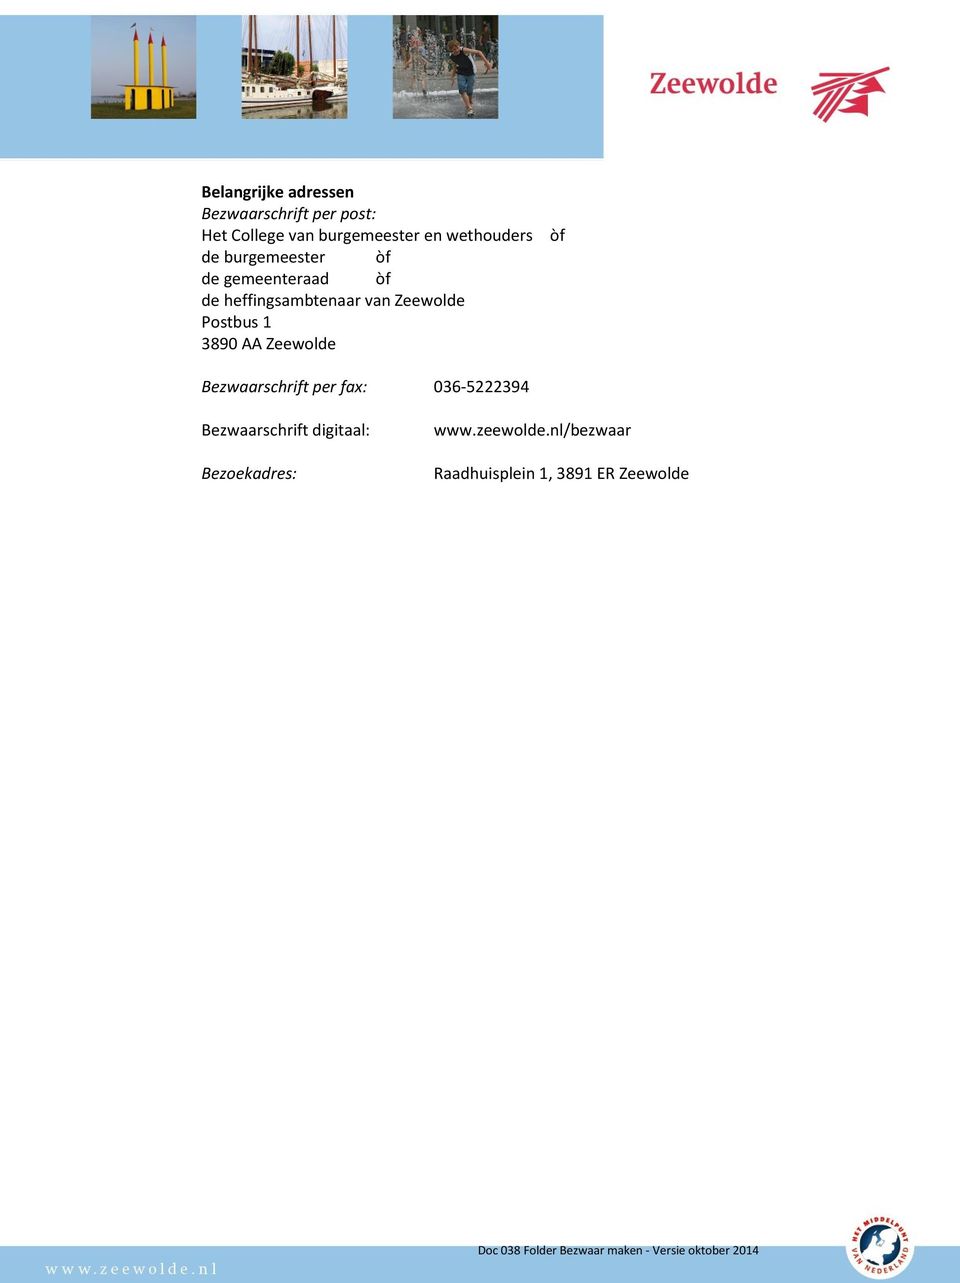 Zeewolde Postbus 1 3890 AA Zeewolde òf Bezwaarschrift per fax: 036-5222394